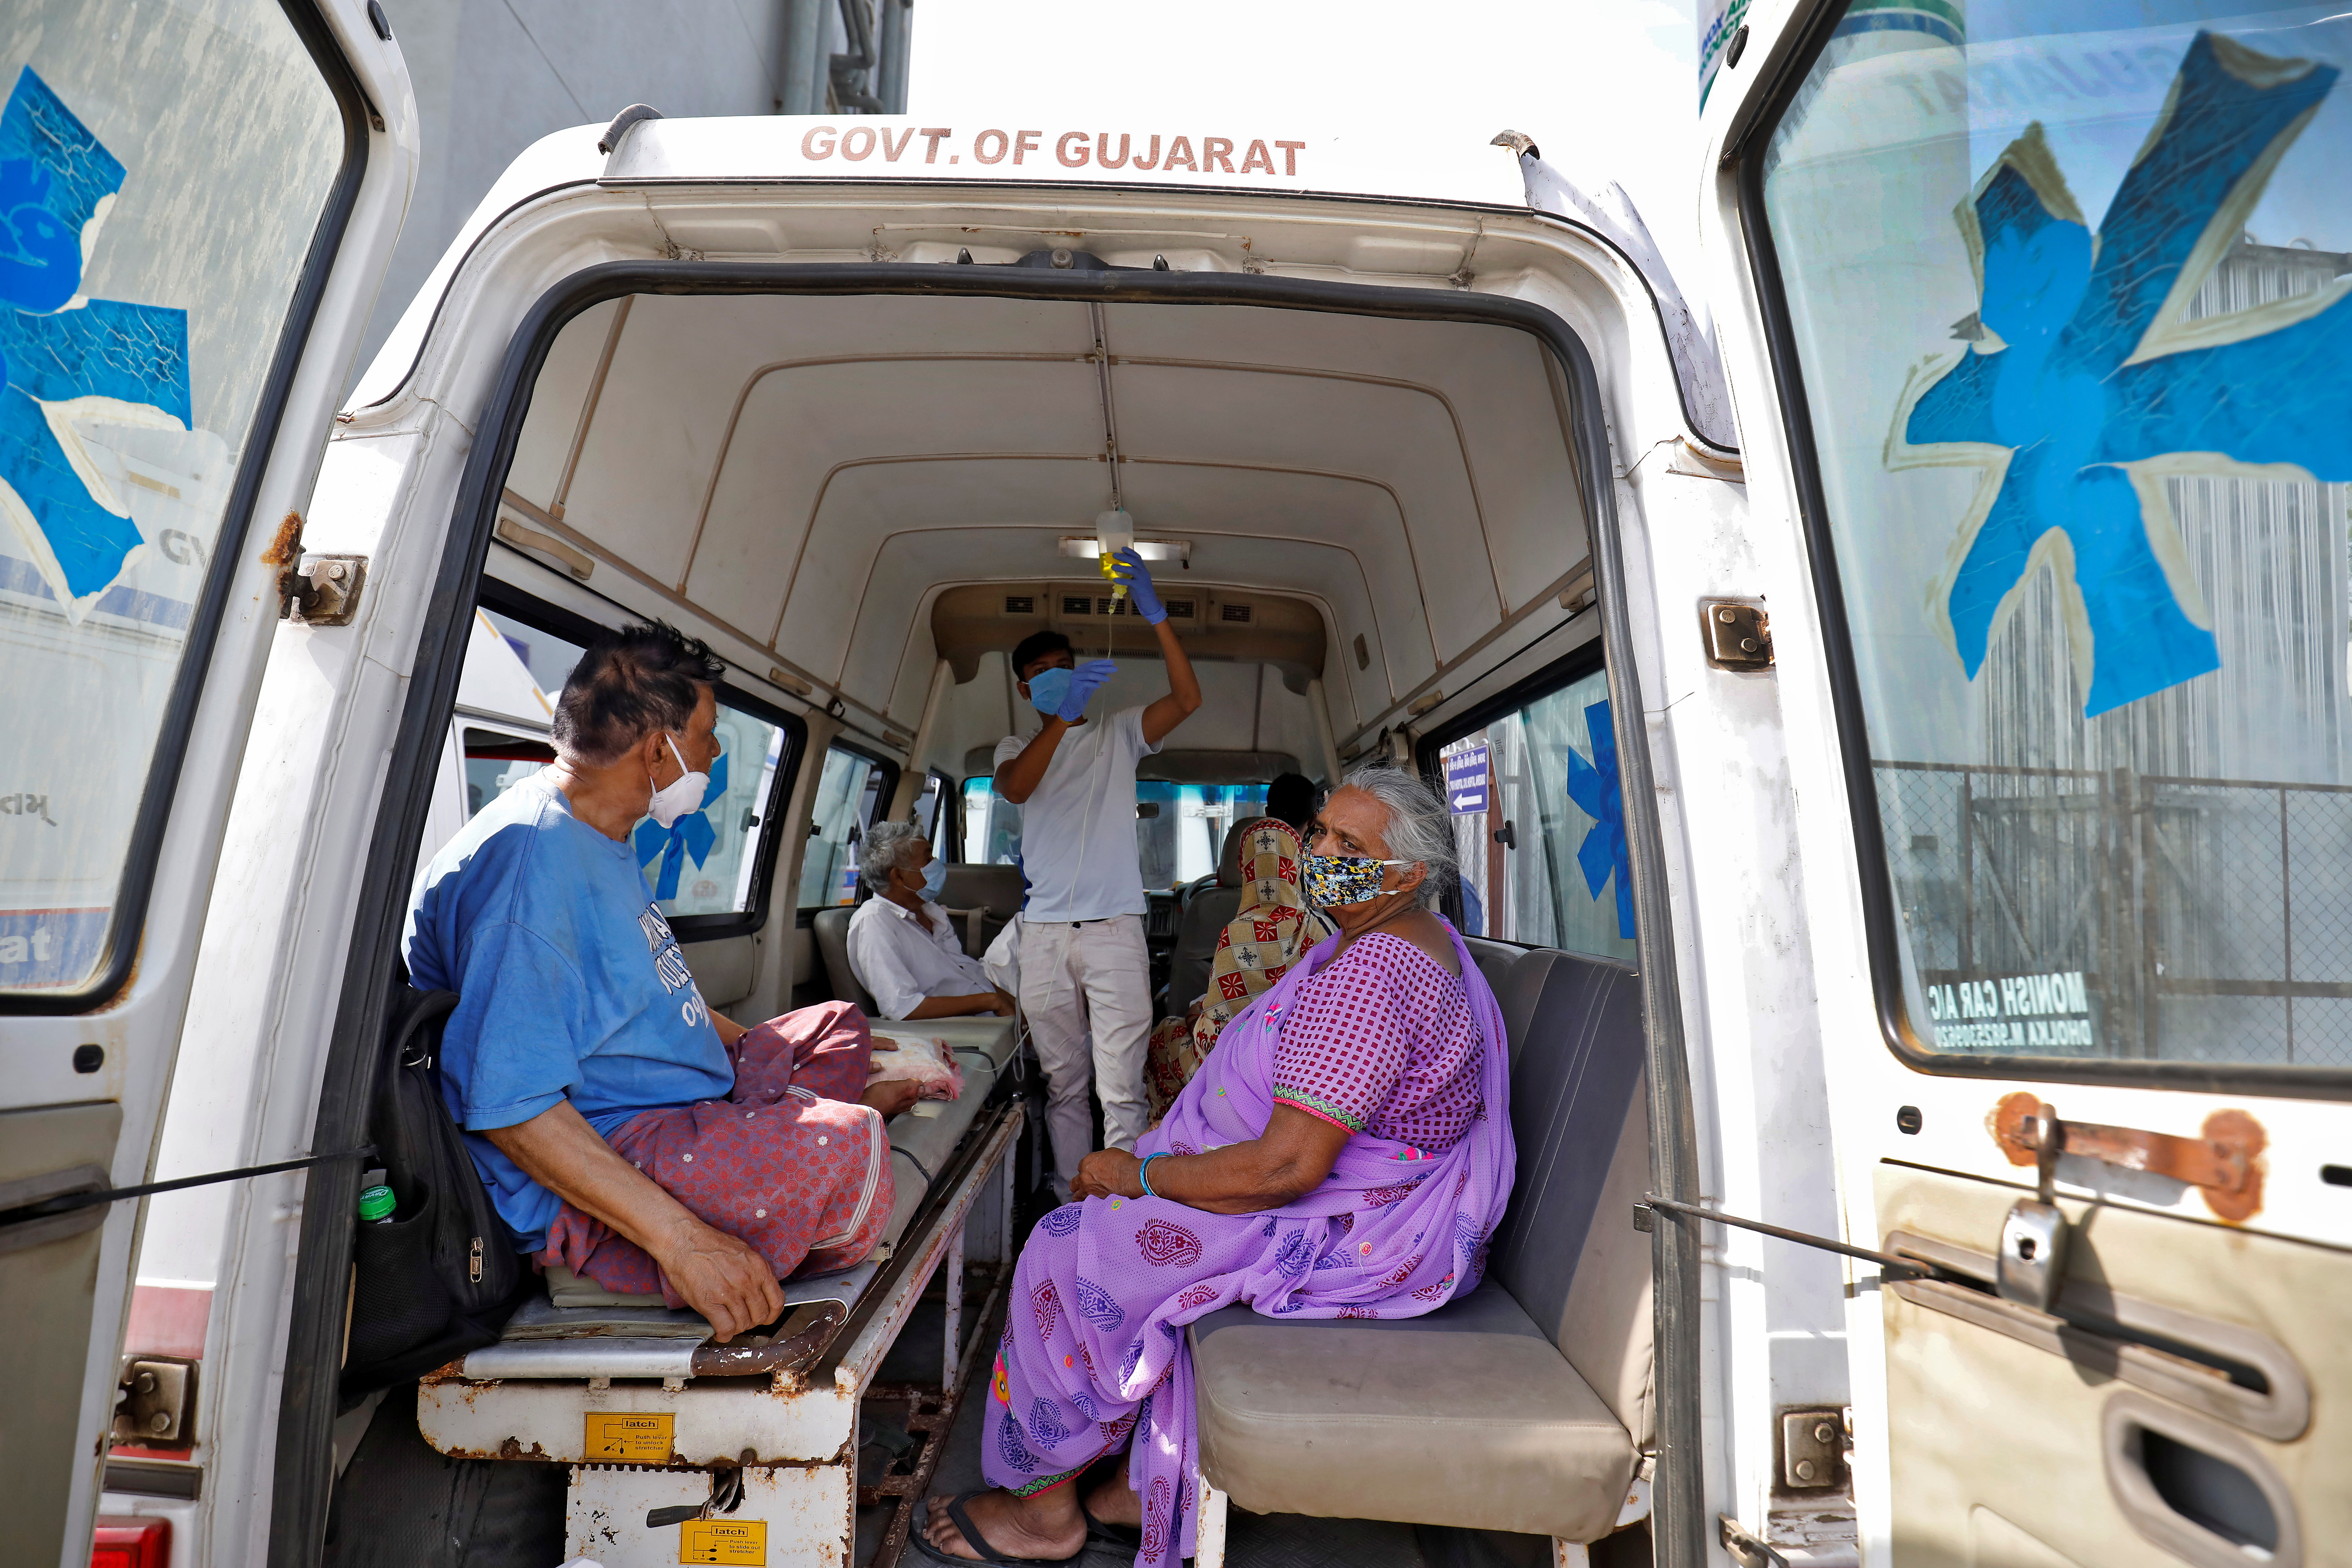 Հիվանդներին երևում են շտապօգնության մեքենայի ներսում՝ սպասելով բուժման համար COVID-19 հիվանդանոց մտնելուն՝ կորոնավիրուսային հիվանդության (COVID-19) տարածման ֆոնին Ահմեդաբադում, Հնդկաստան, 22 ապրիլի, 2021թ.: REUTERS/Amit Dave